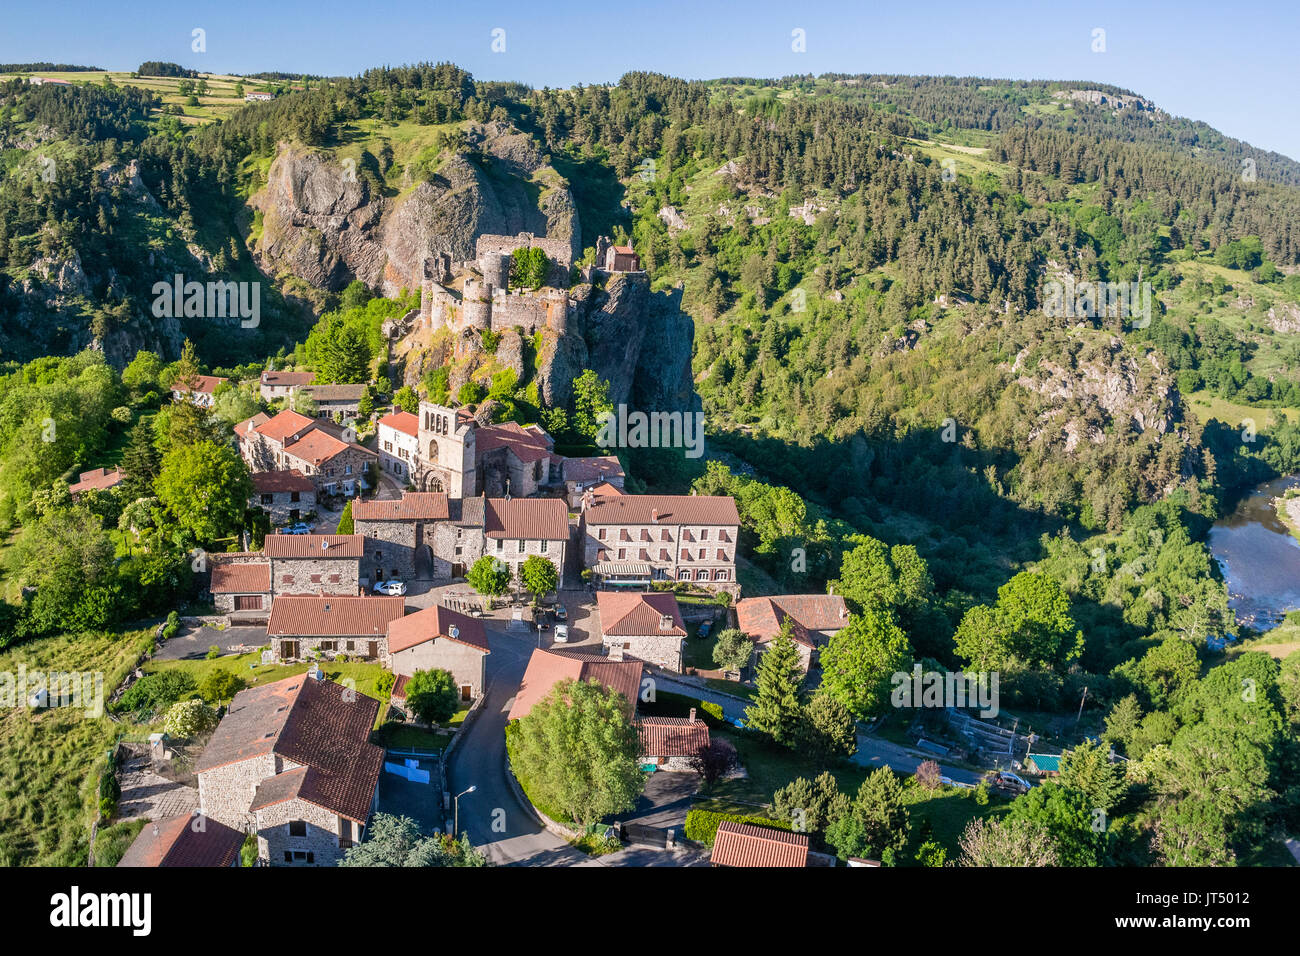 France, Haute-Loire, Loire valley, Arlempdes, labelled Les Plus Beaux Villages de France (The Most beautiful Villages of France) (aerial view) Stock Photo